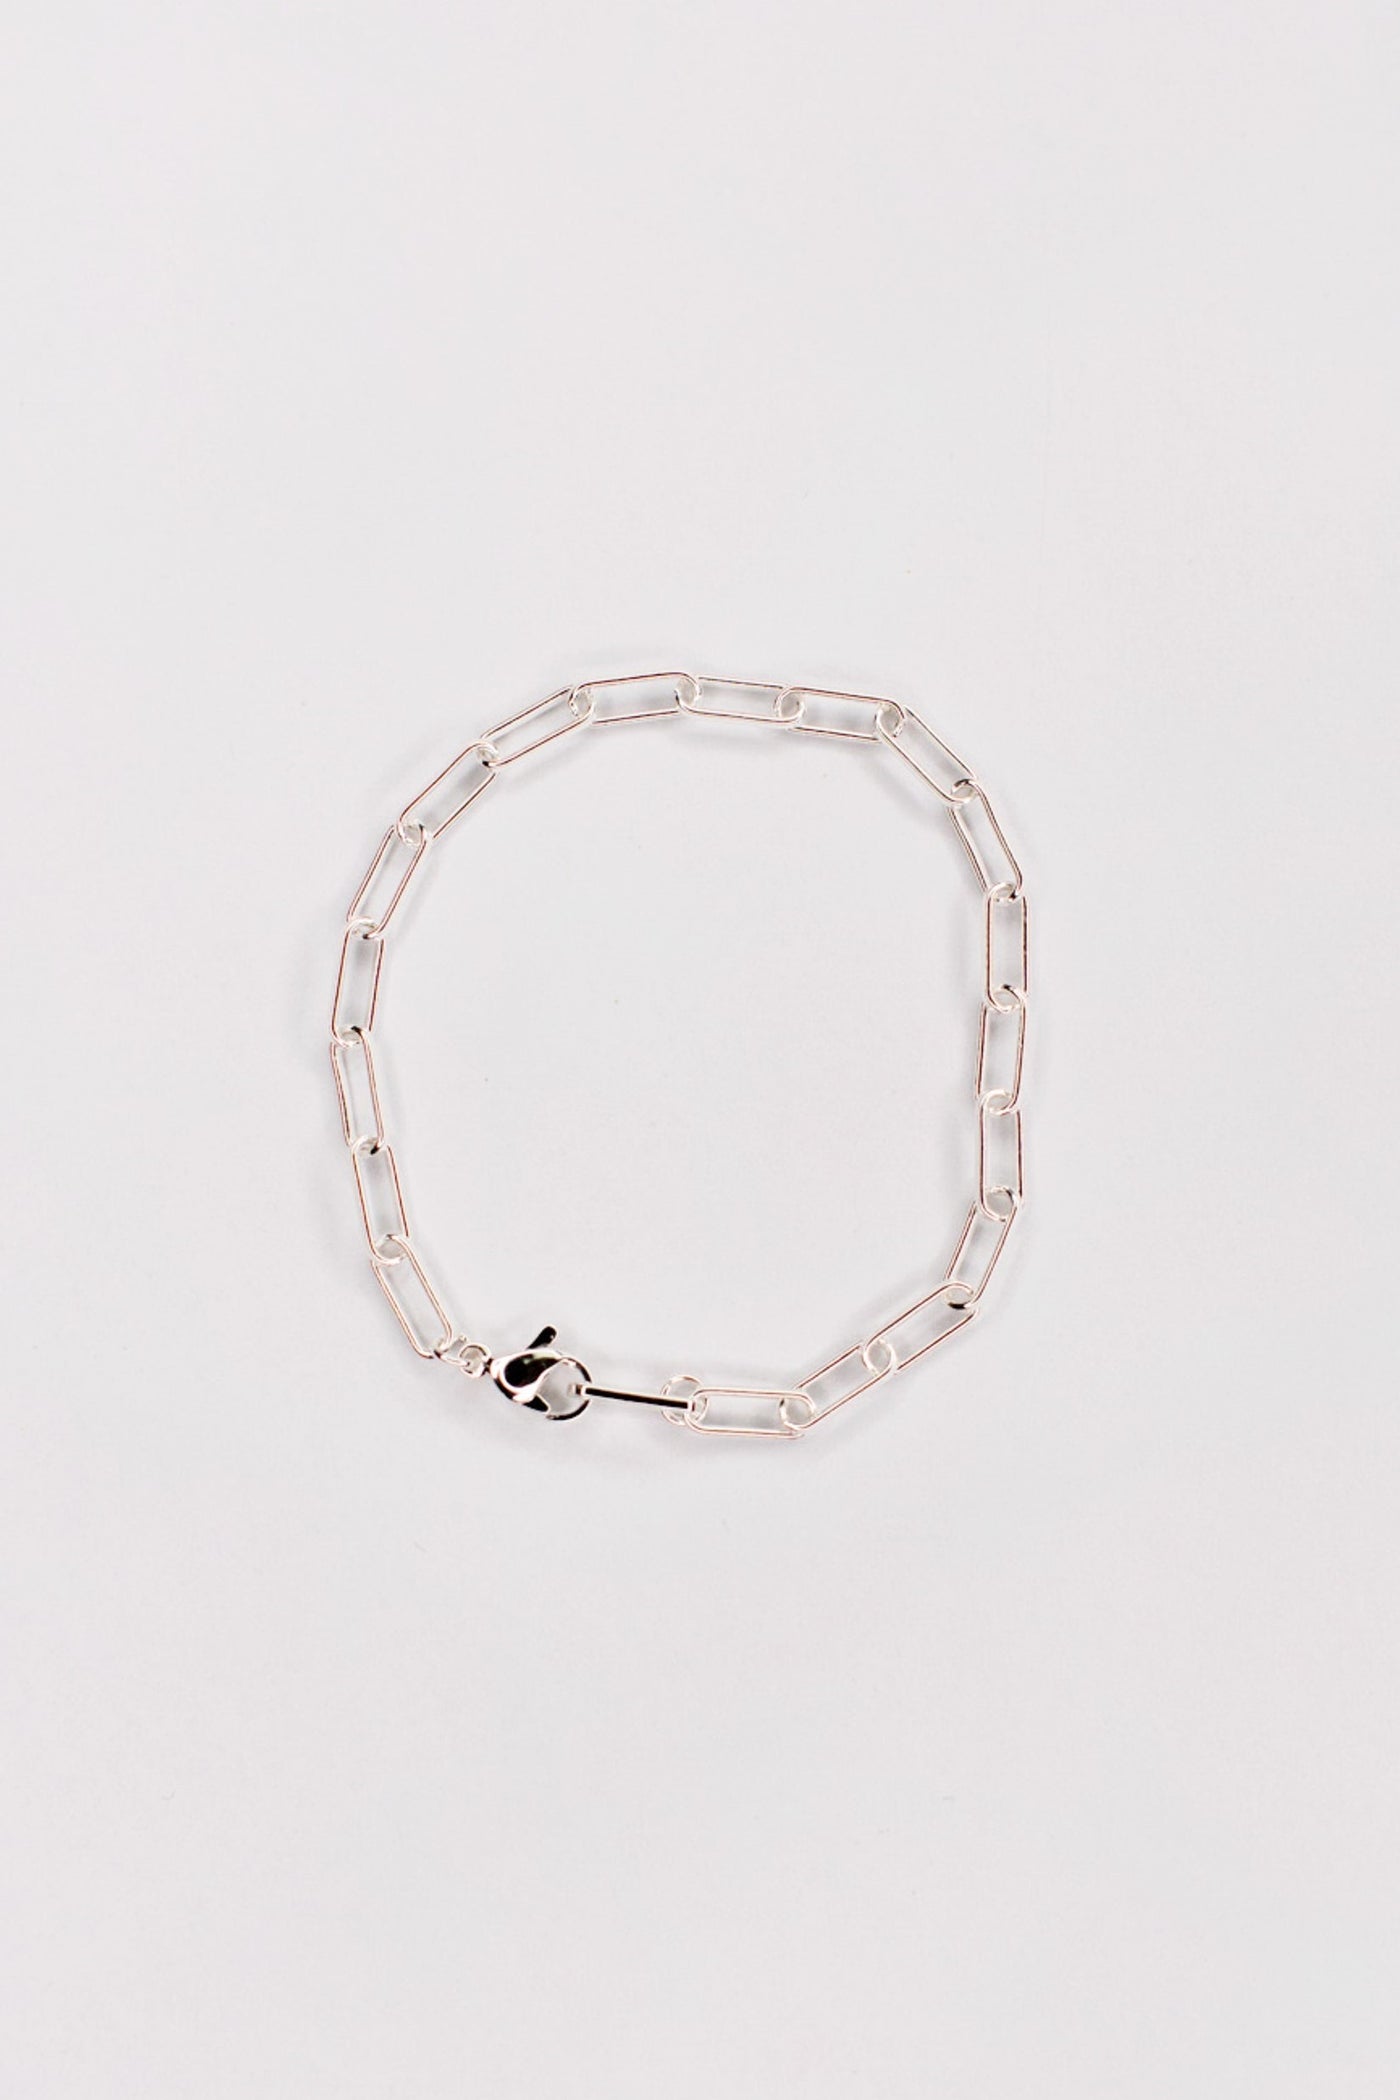 Oval Paperclip Sterling Silver Bracelet